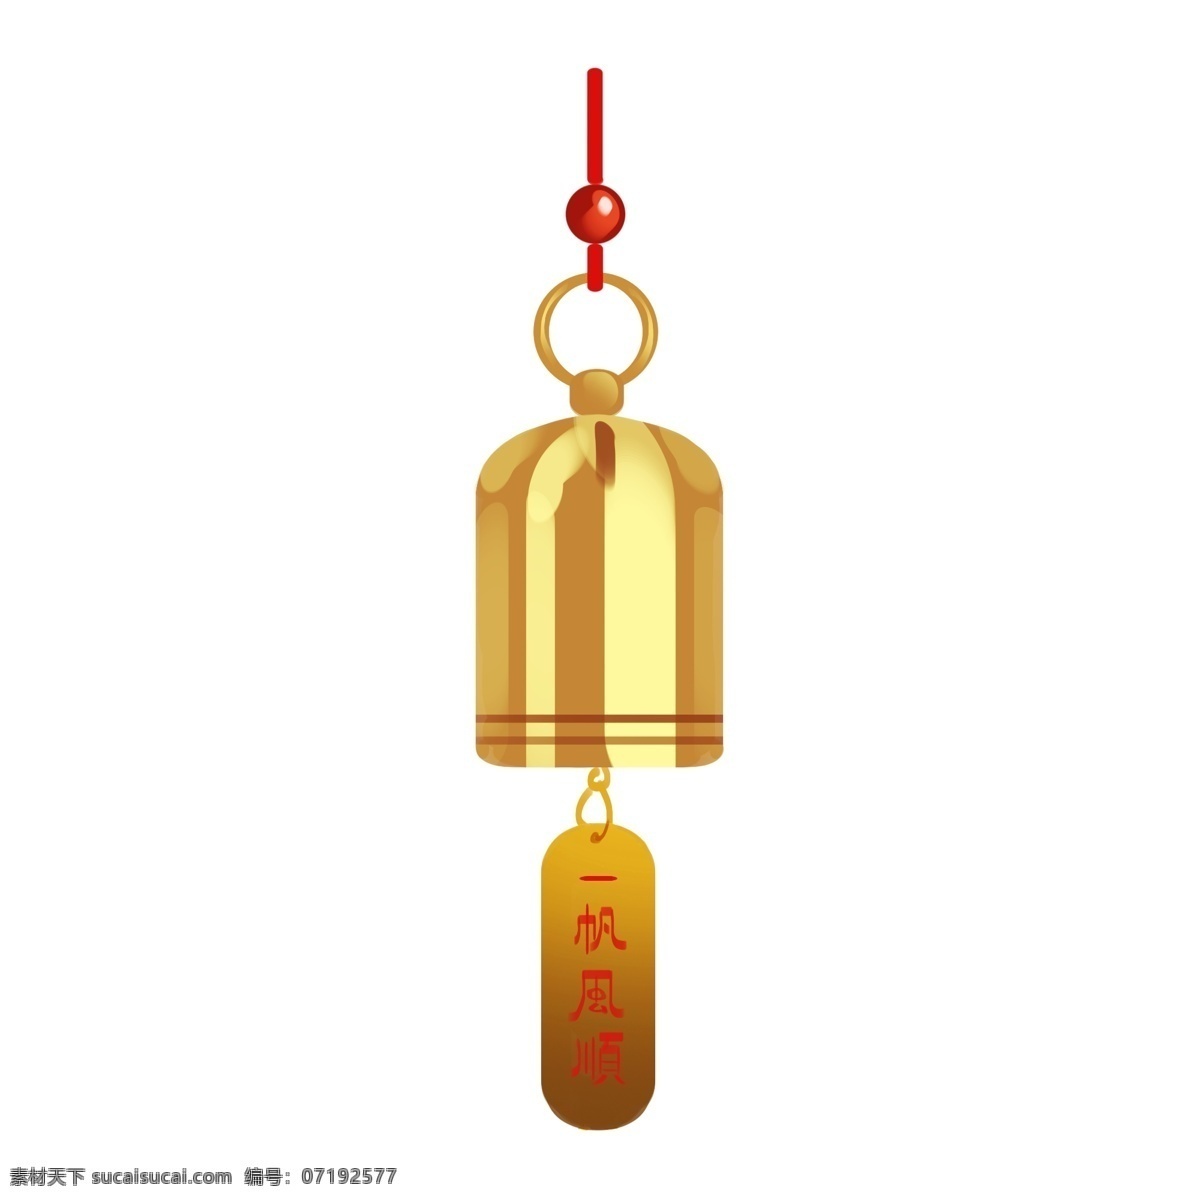 黄色 铃铛 挂饰 插画 红色的绳子 一帆风顺挂饰 漂亮 手绘铃铛挂饰 卡通铃铛挂饰